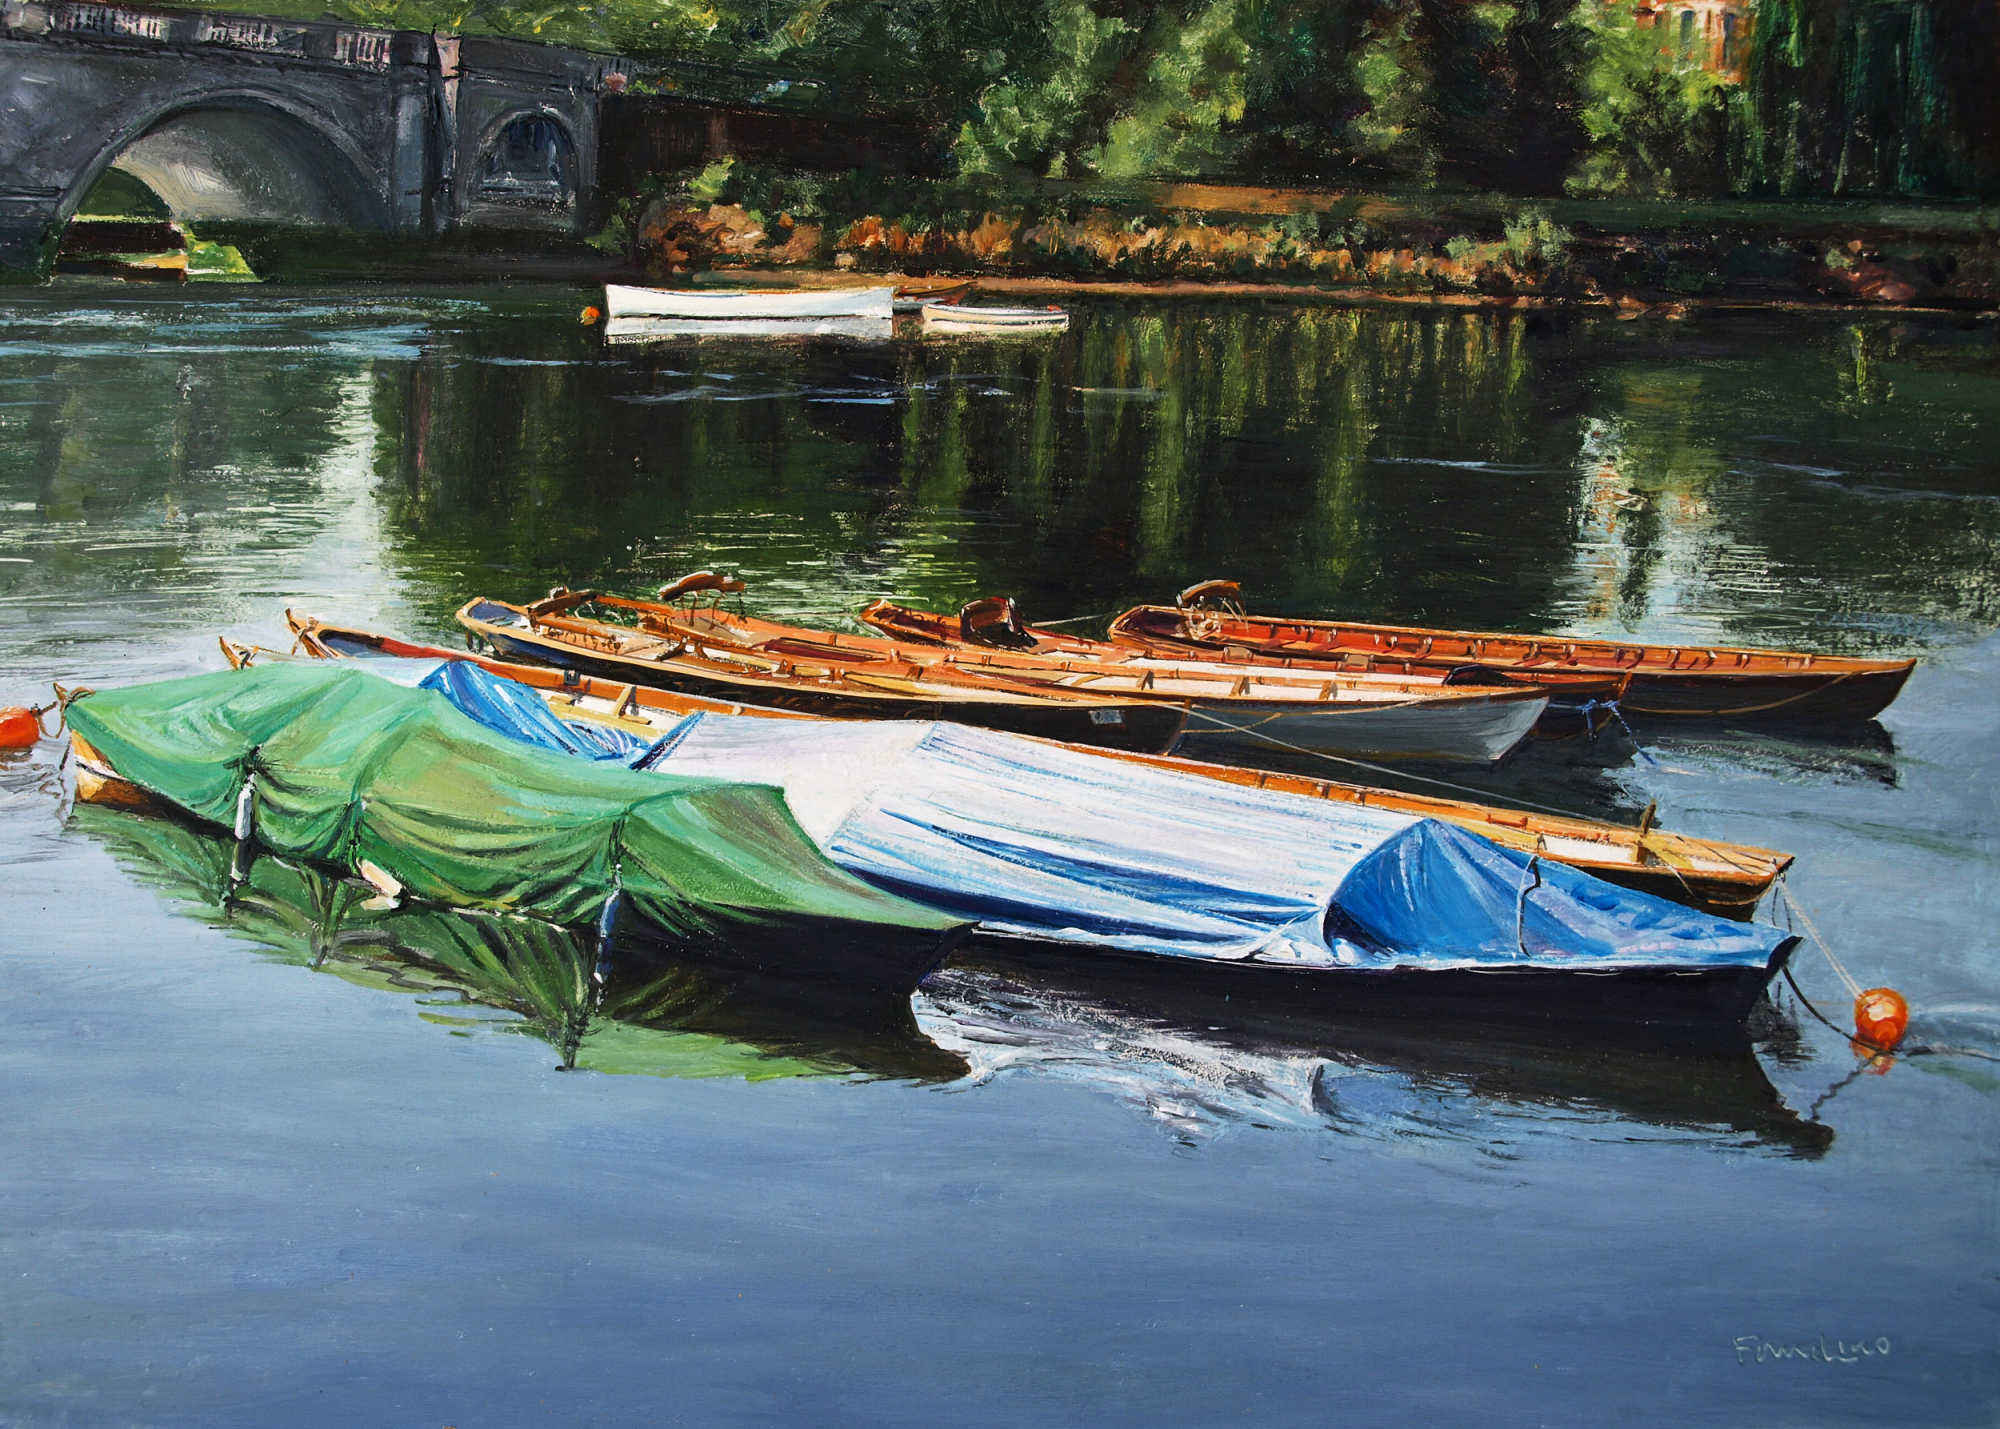 Boats at Richmond, Surrey (England)